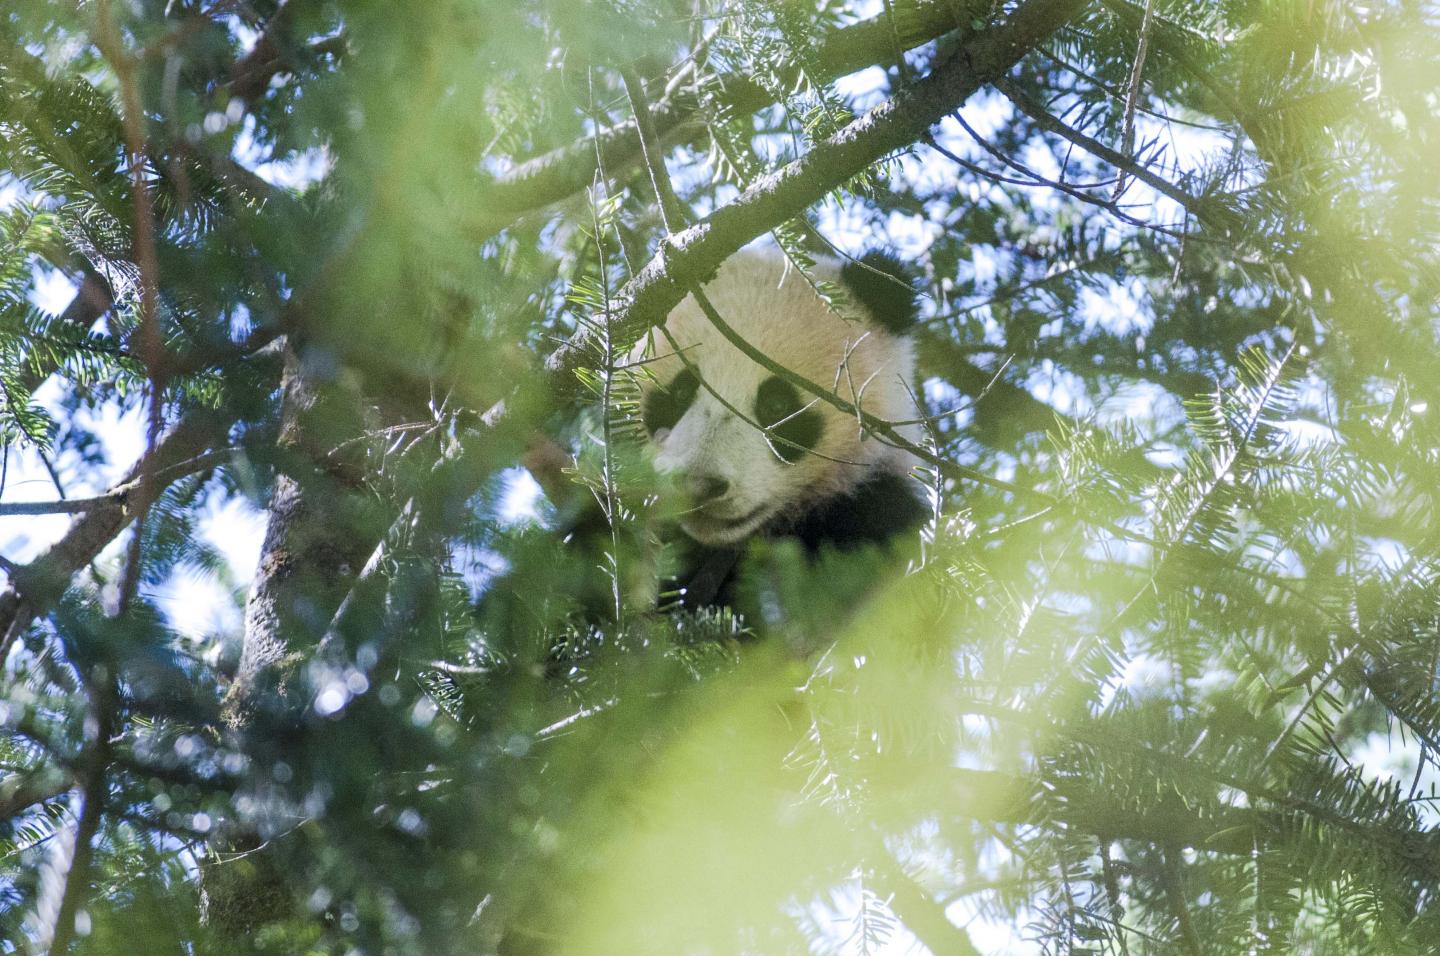 Panda in the Pines